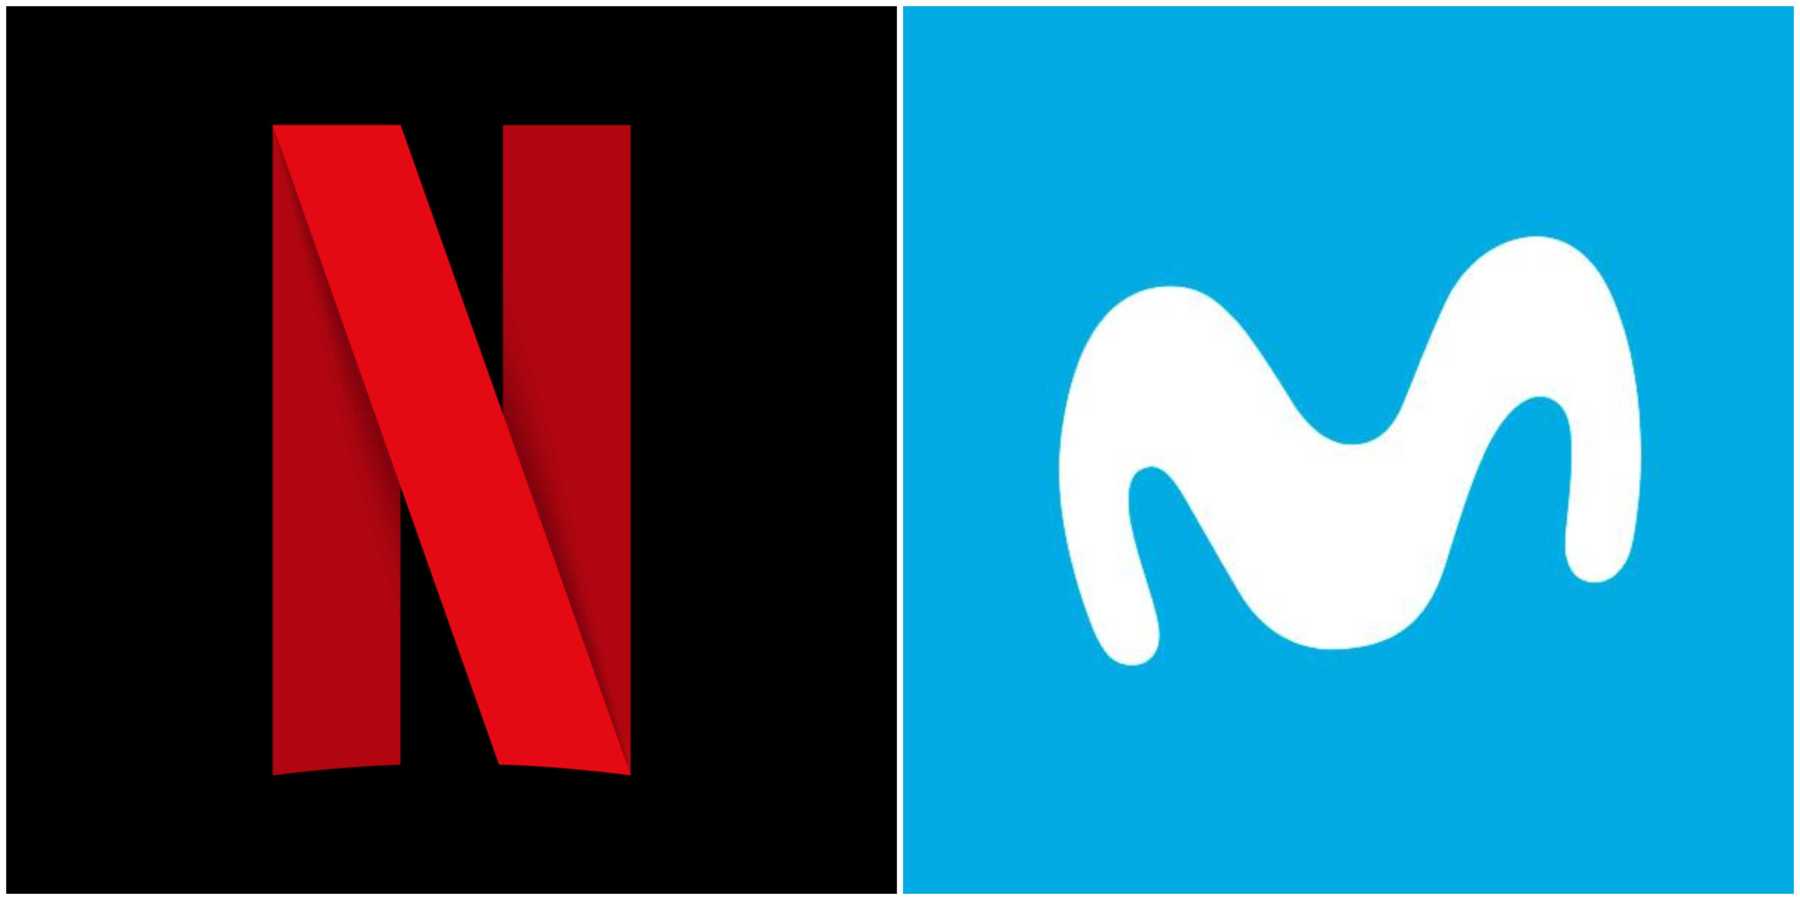 Telefónica integrará Netflix en sus plataformas de vídeo y TV en América Latina